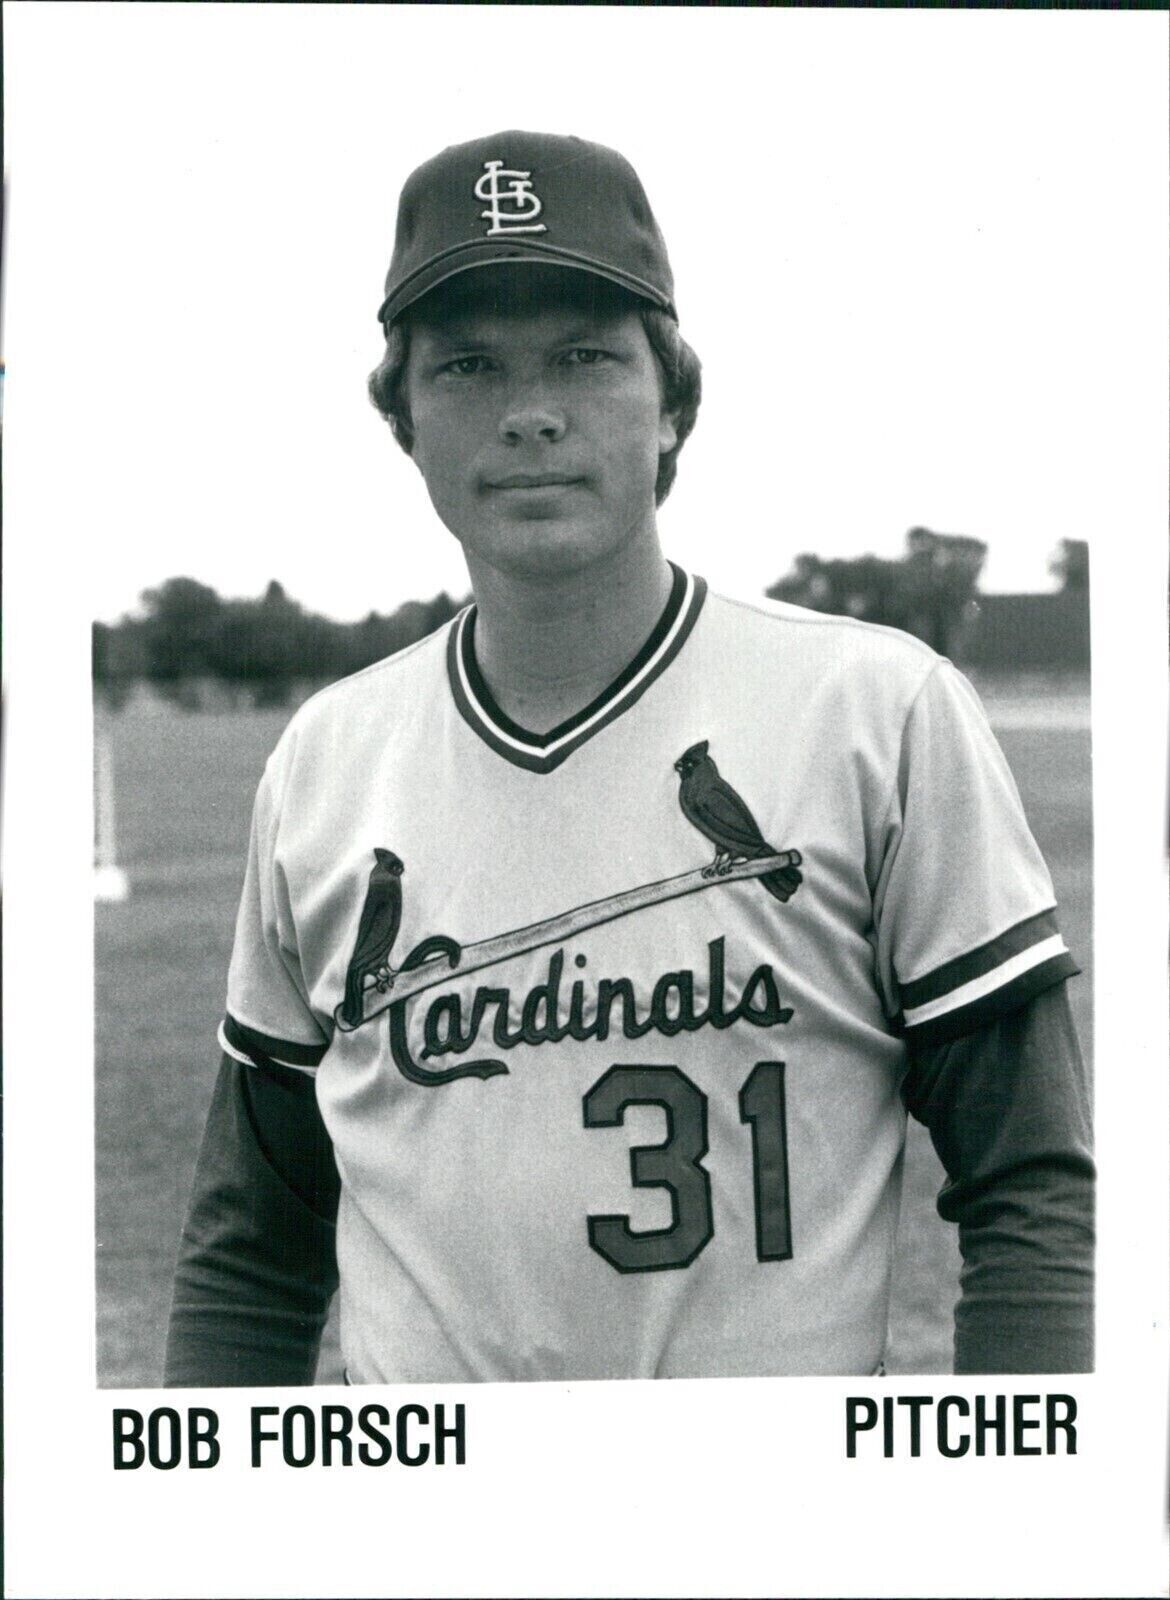 1981 Bob Forsch Major League Ball Pitcher St Louis Cardinals Sports 5X7 Photo